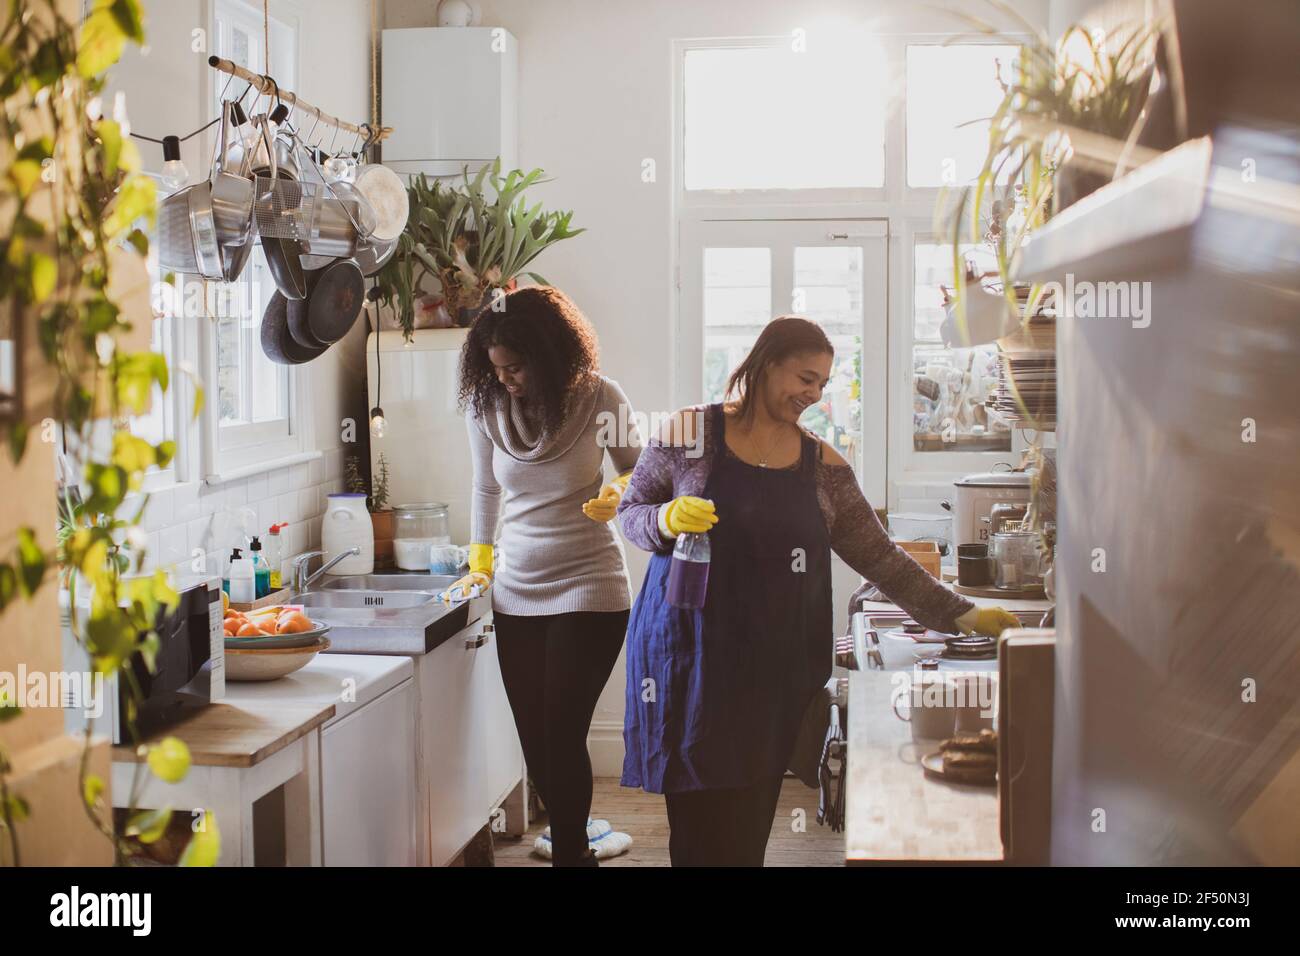 Mutter und Tochter in Gummihandschuhe Reinigung Küche Stockfotografie -  Alamy